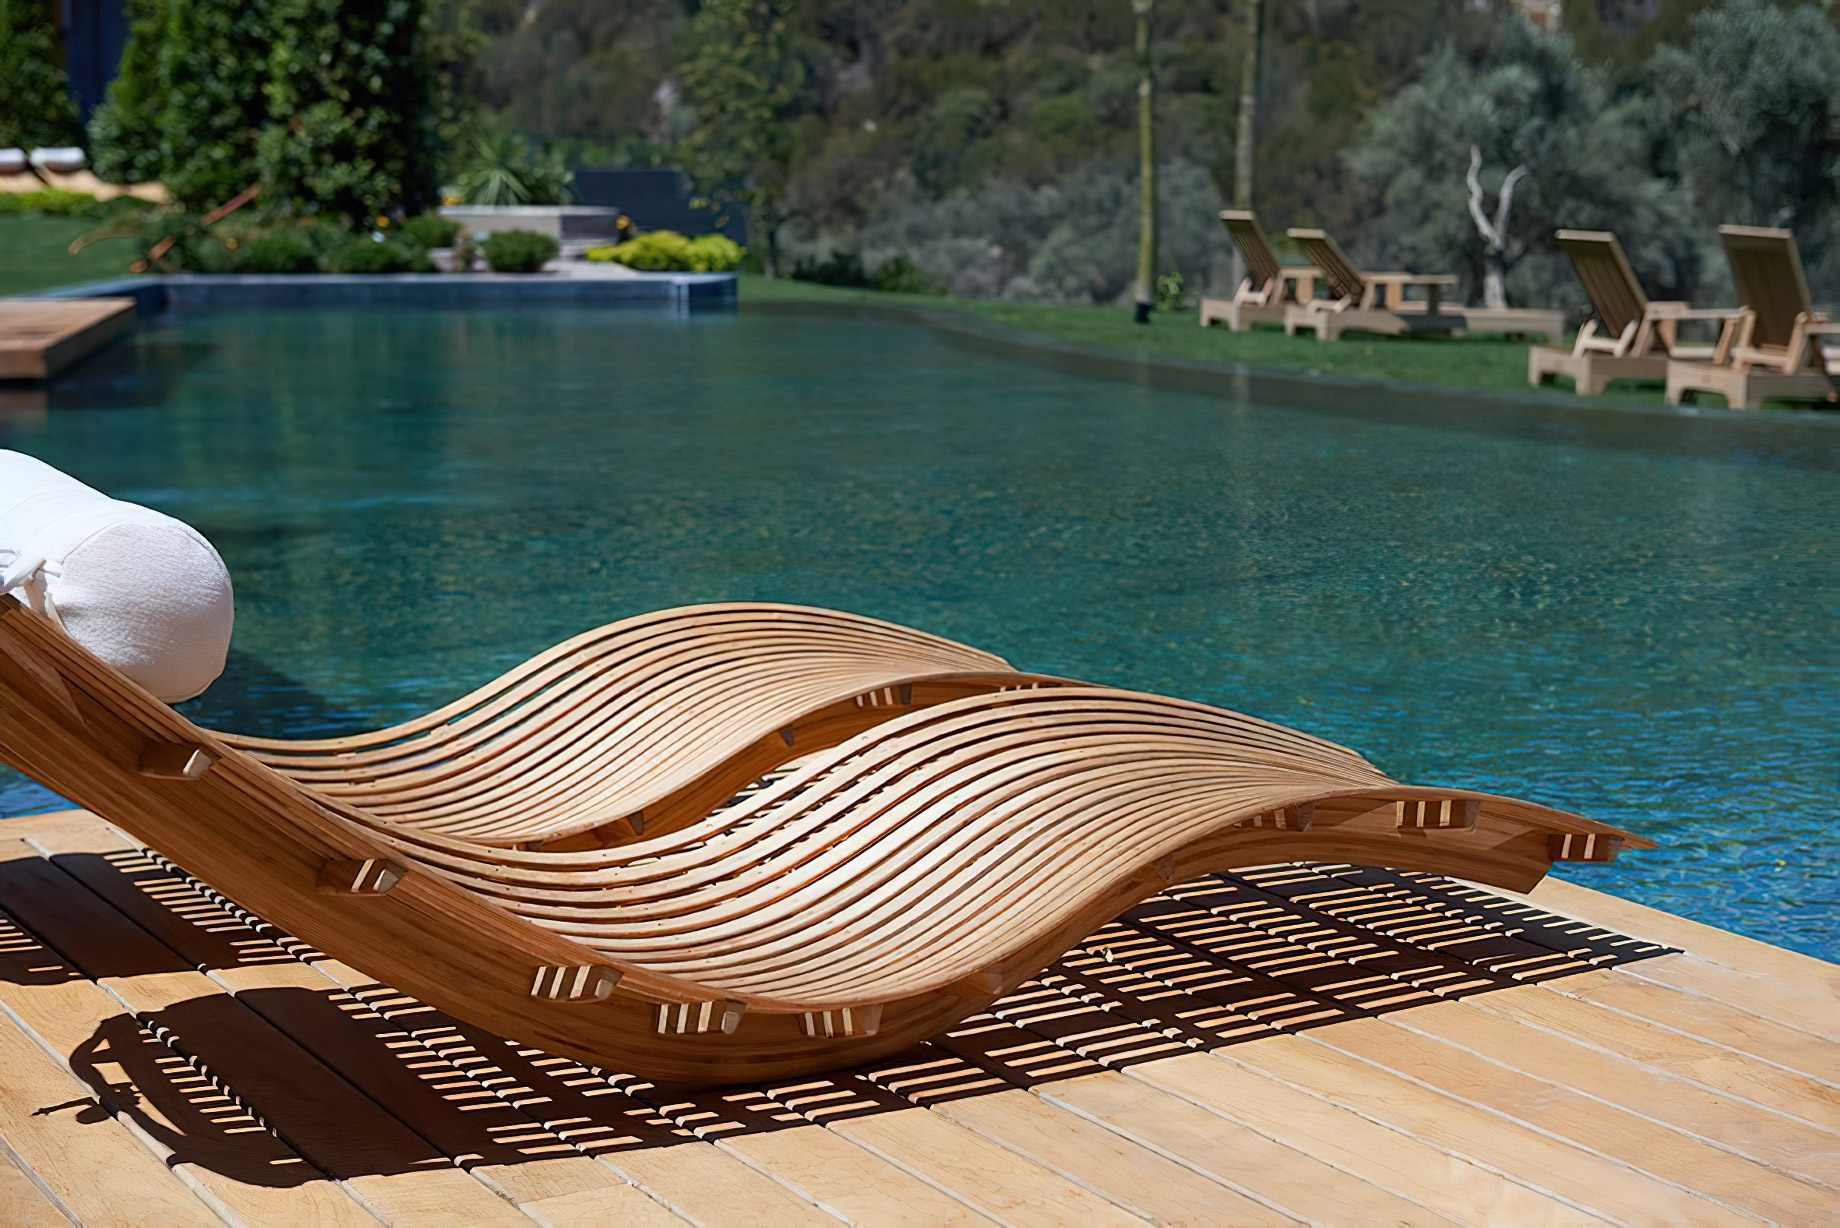 Mandarin Oriental, Bodrum Hotel – Bodrum, Turkey – Spa Pavilion Exterior Pool Deck Chairs